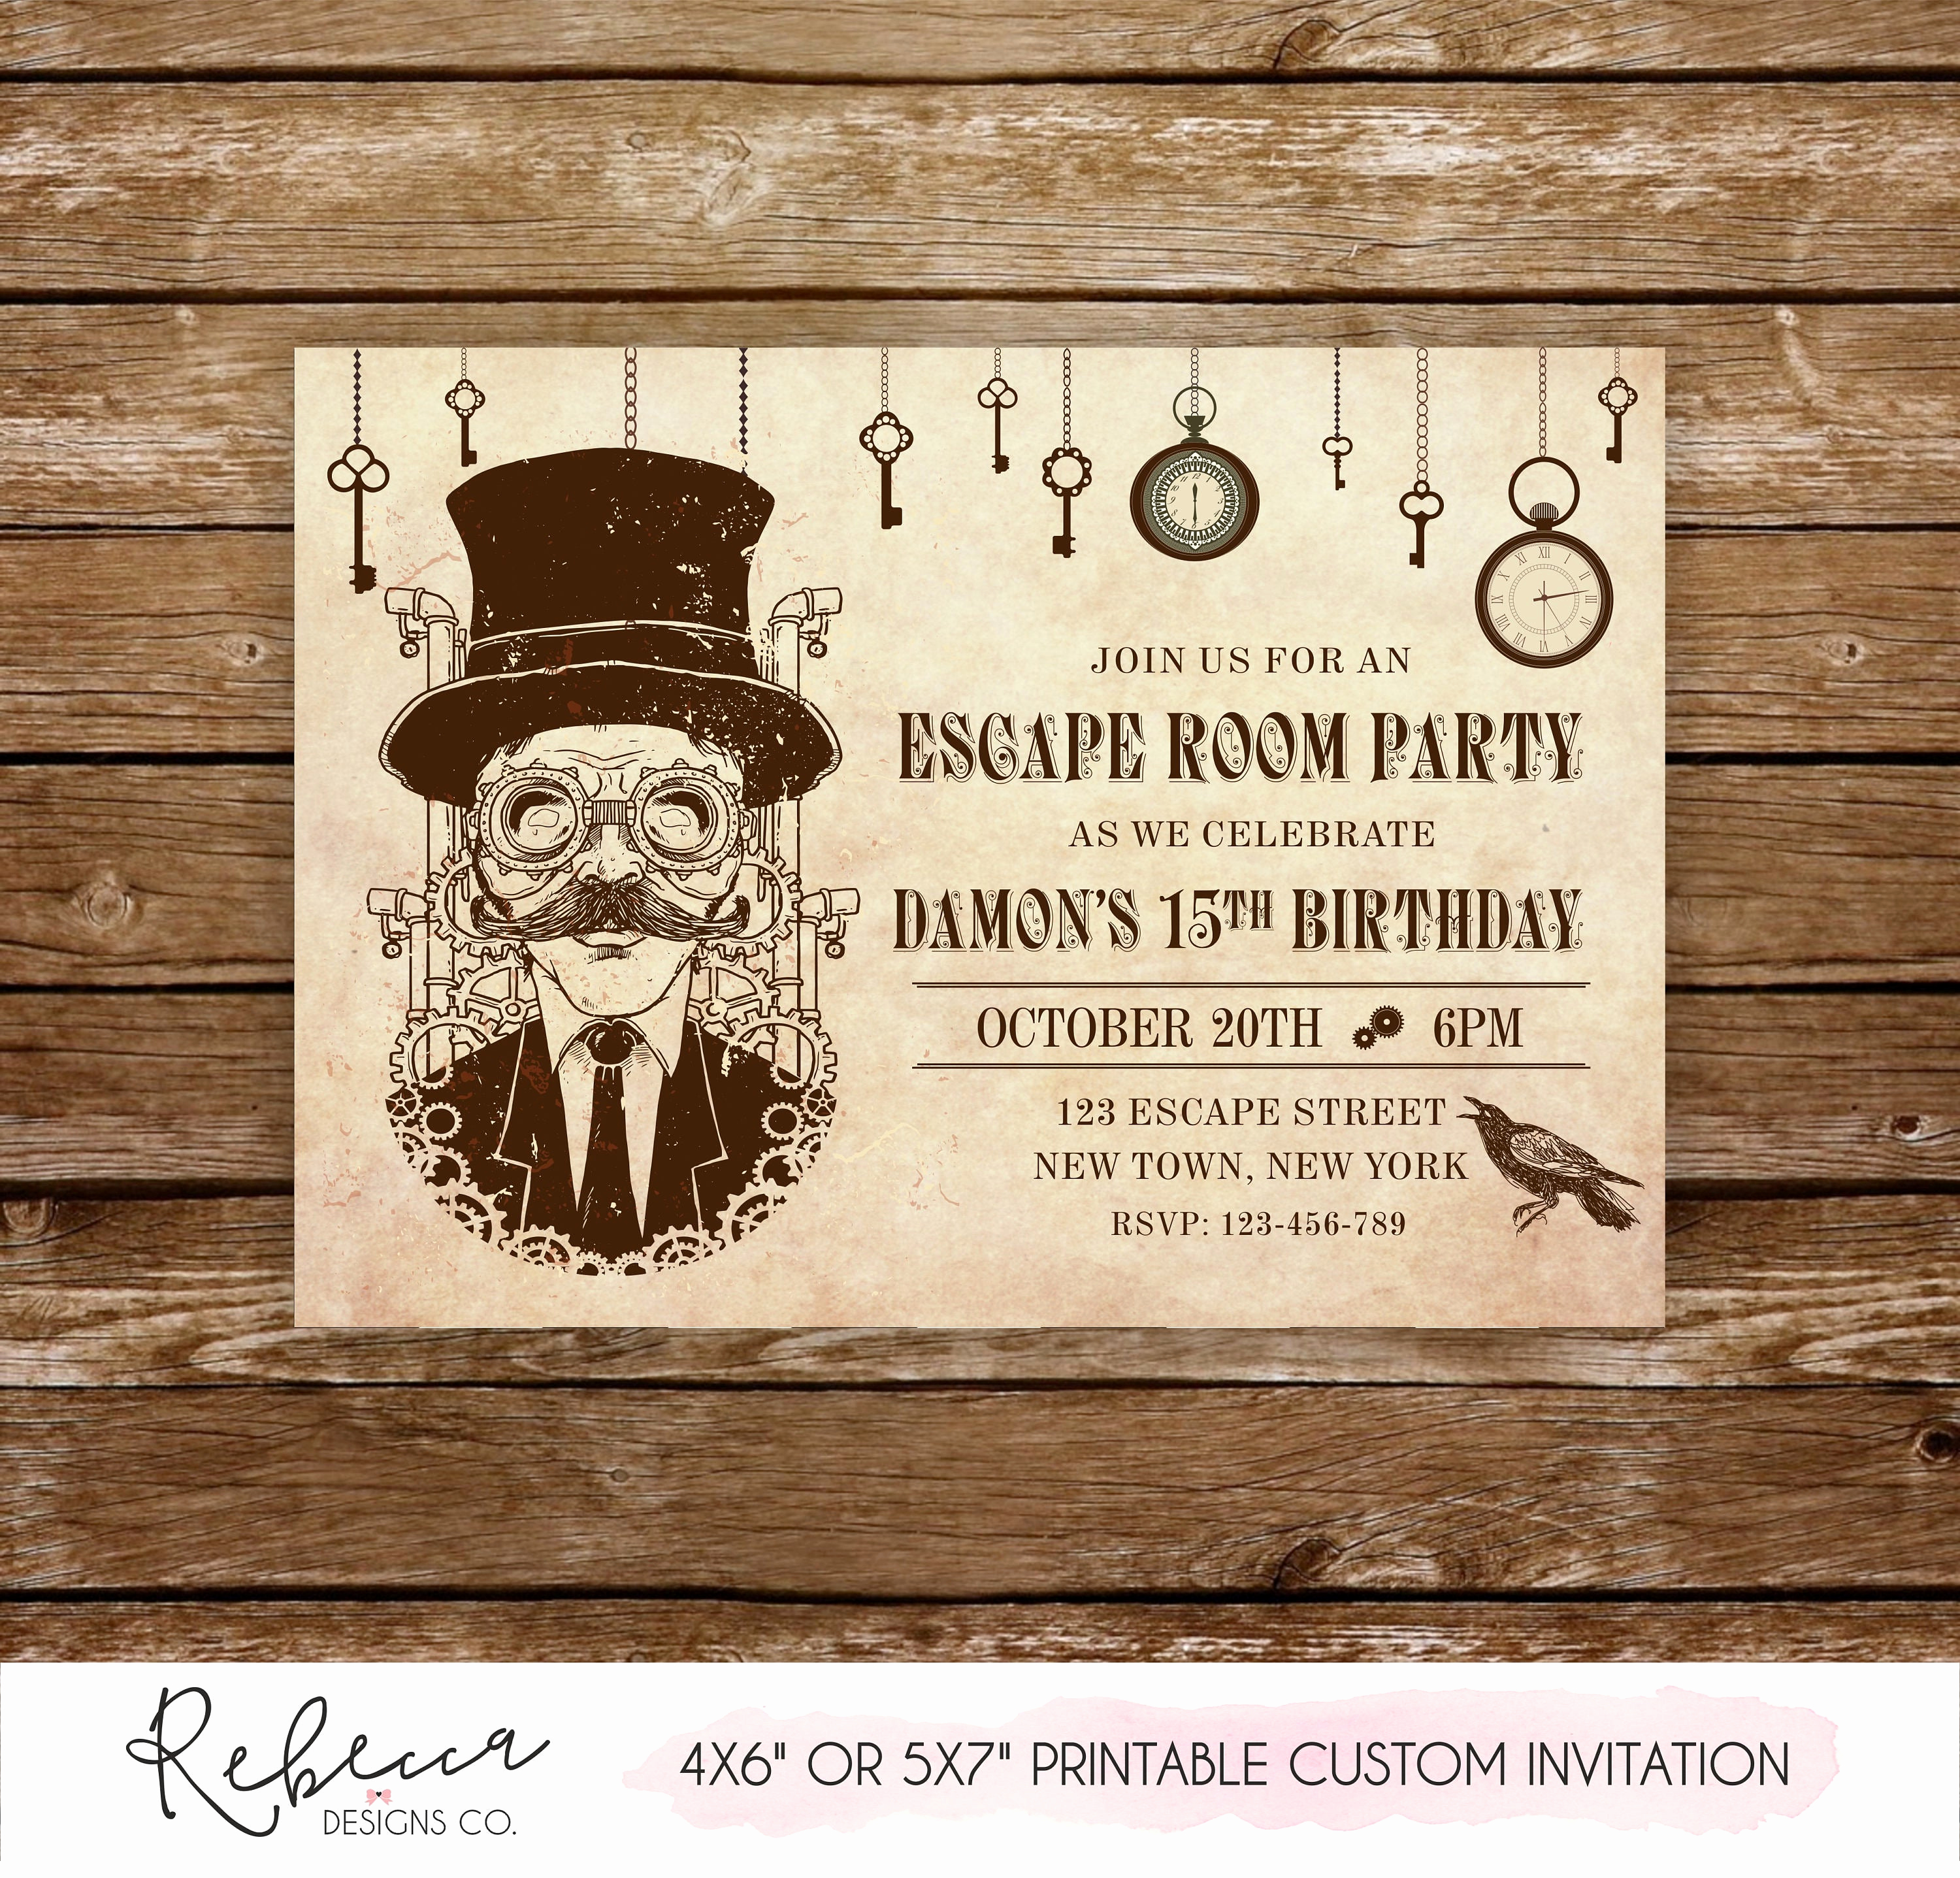 Escape Room Birthday Invitation Luxury Escape Room Invitation Escape Room Party Printable Invitation